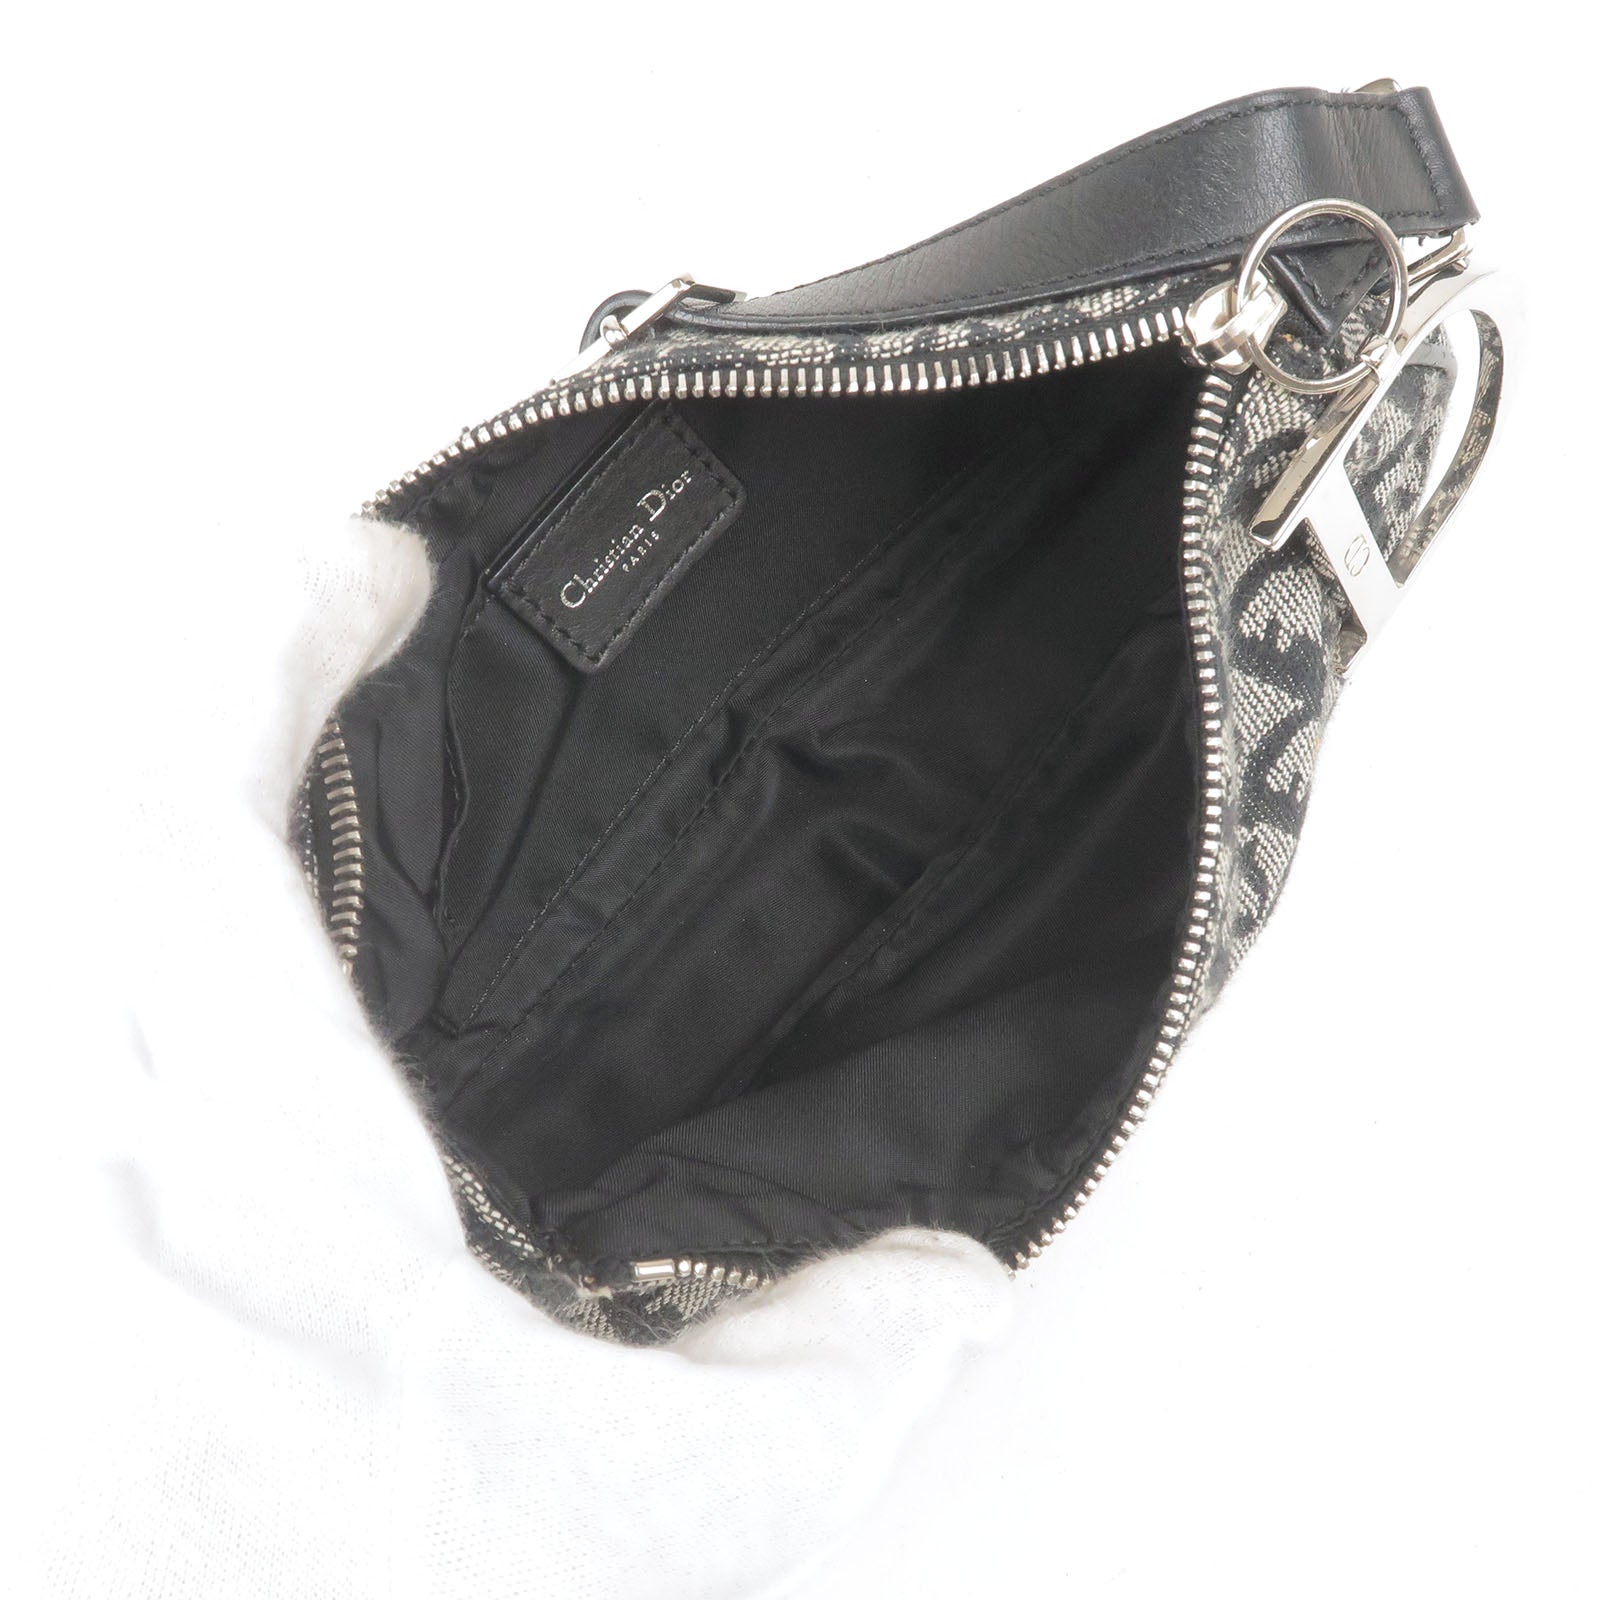 CHRISTIAN DIOR Trotter Saddle bag Crossbody Shoulder Bag Canvas Gray x  Black